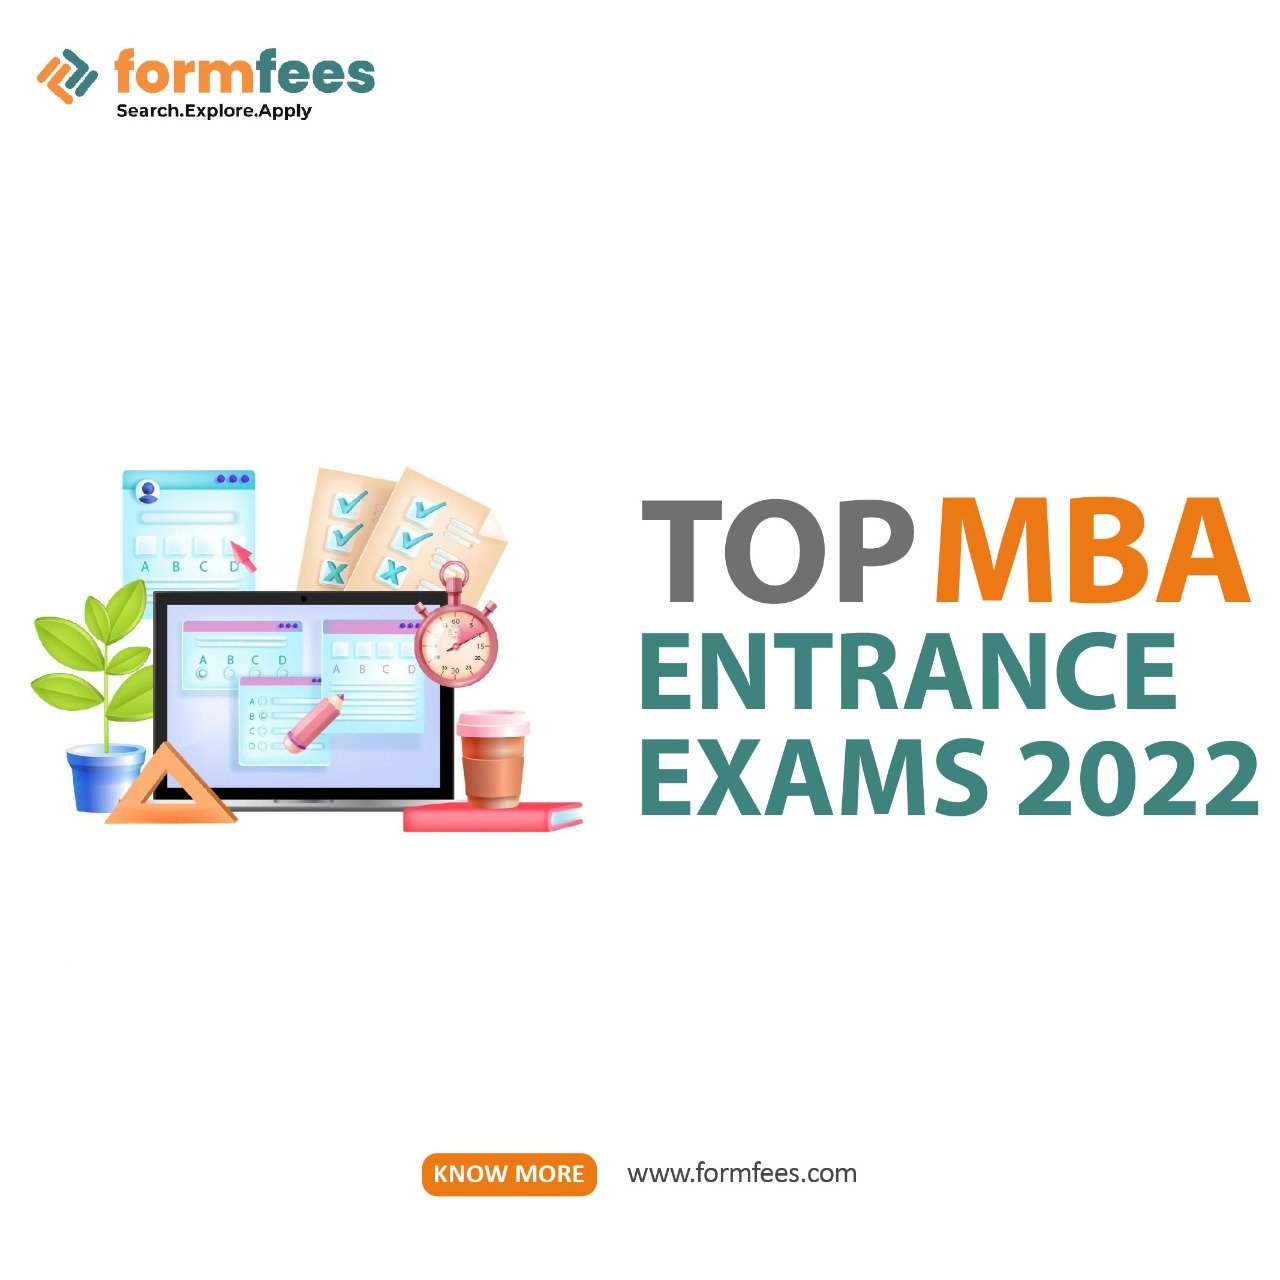 Top MBA Entrance Exams 2022